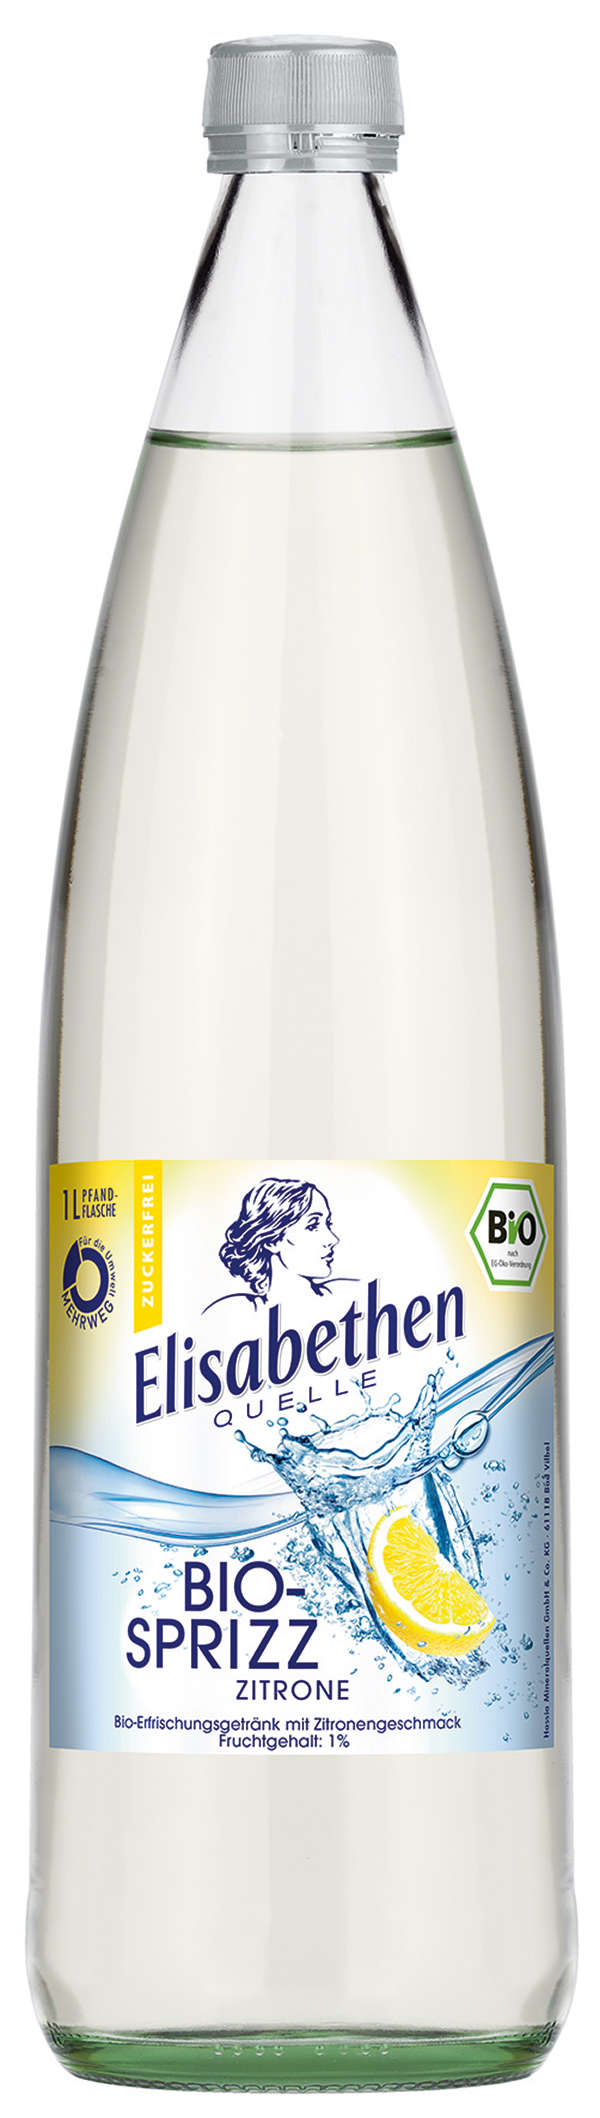 Elisabethen Bio-Sprizz Zitrone  6 x 1,0 l (Glas)